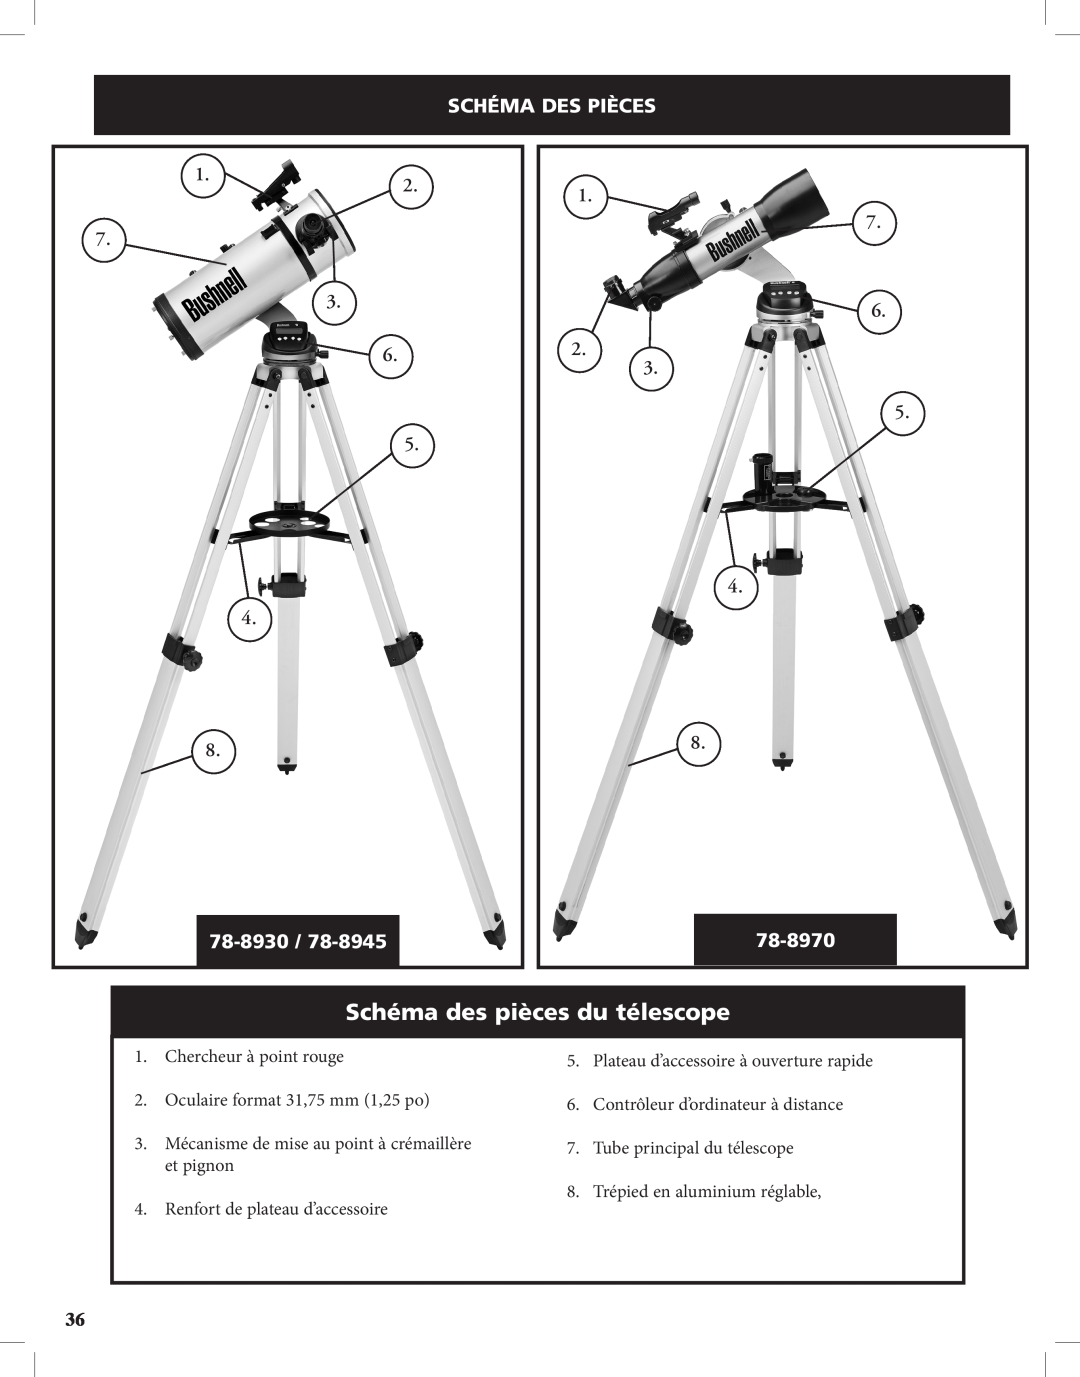 Bushnell Discoverer Schéma des pièces du télescope, Schéma Des Pièces, 1.2 7 3 6 5, 1 7 6 2 3 5, 78-8930, 78-8970 